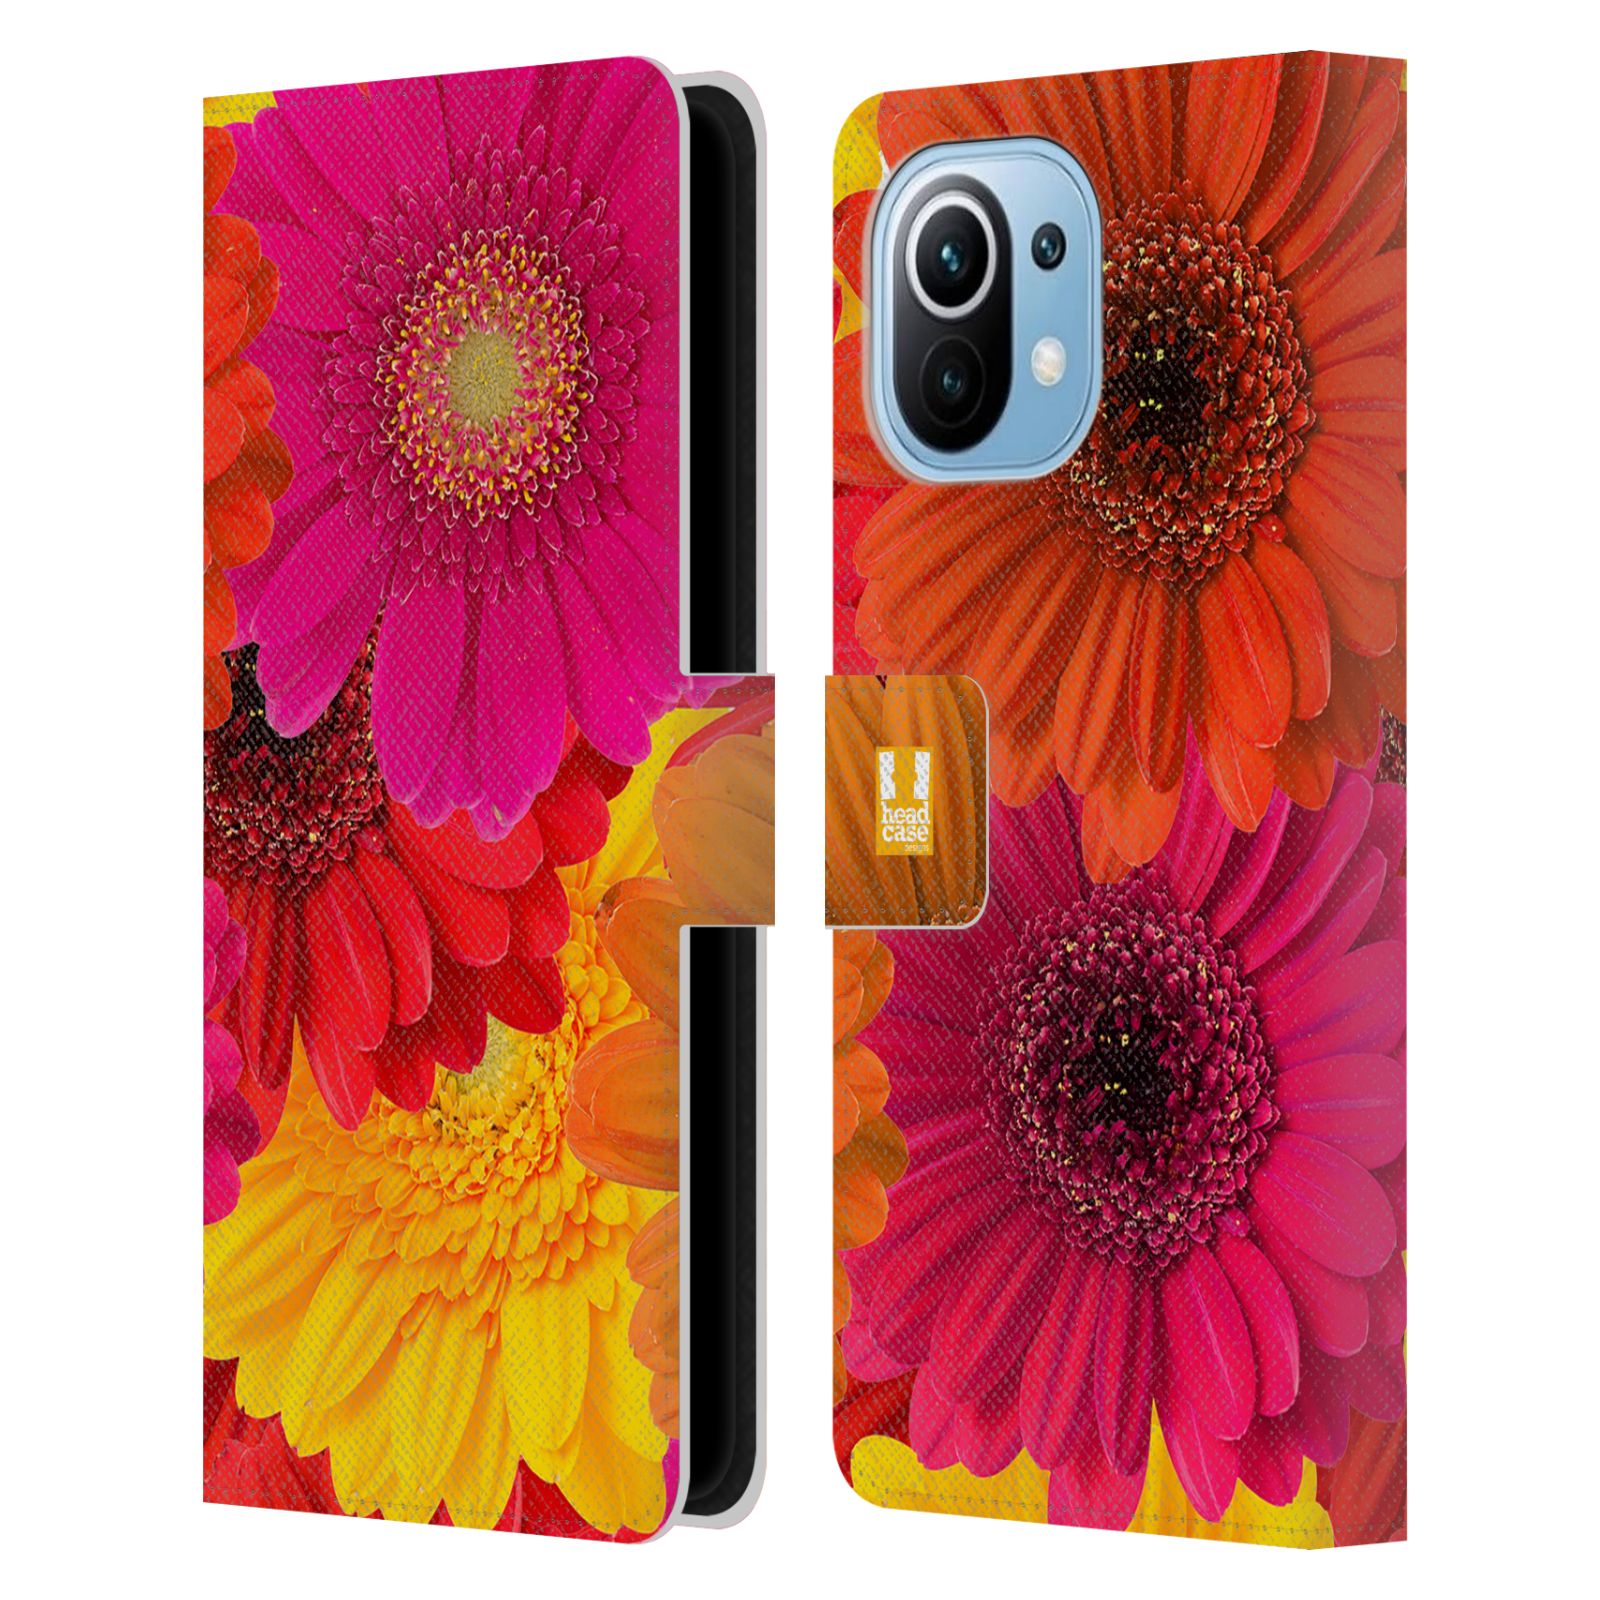 Pouzdro HEAD CASE na mobil Xiaomi Mi 11 květy foto fialová, oranžová GERBERA